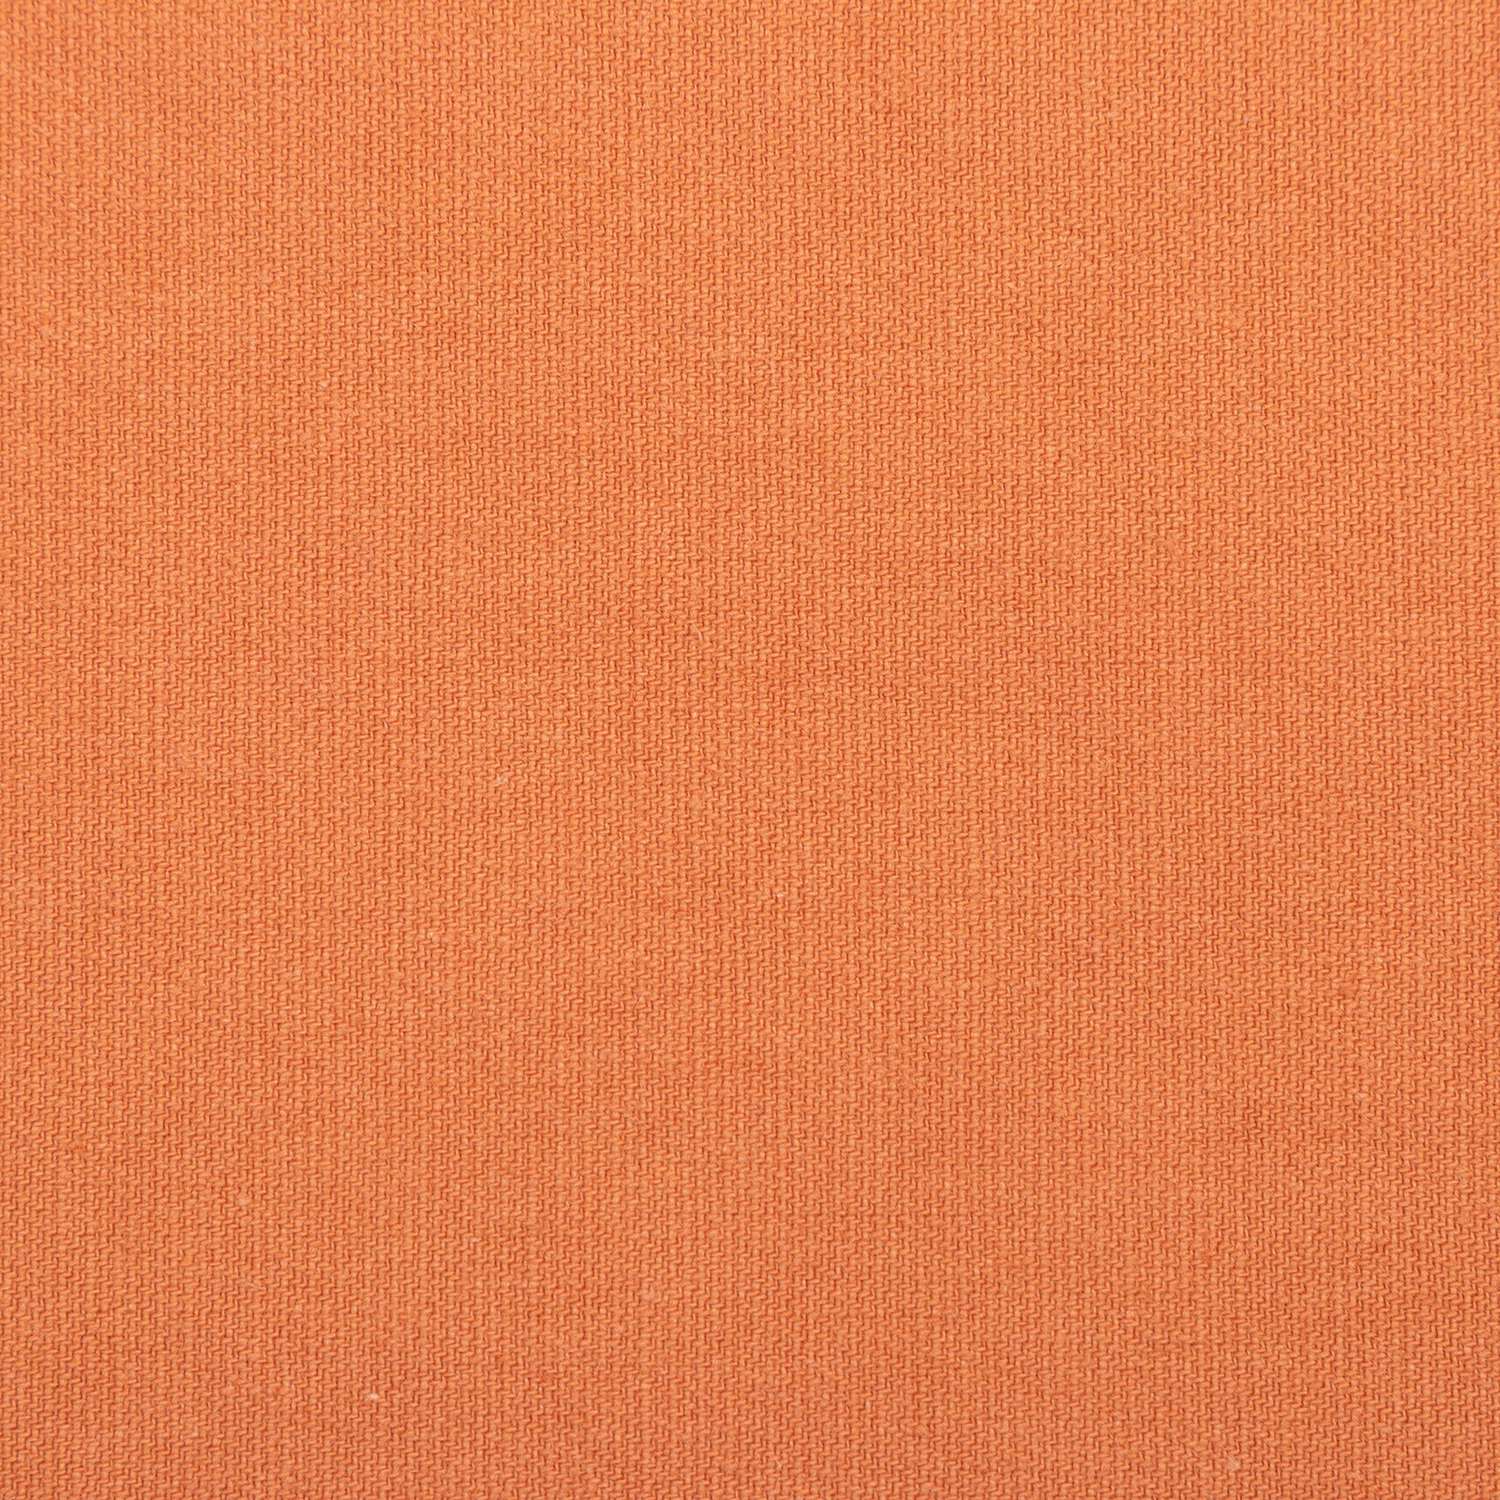 Скатерть Этель оранжевая 150х110 см саржа - фото 2